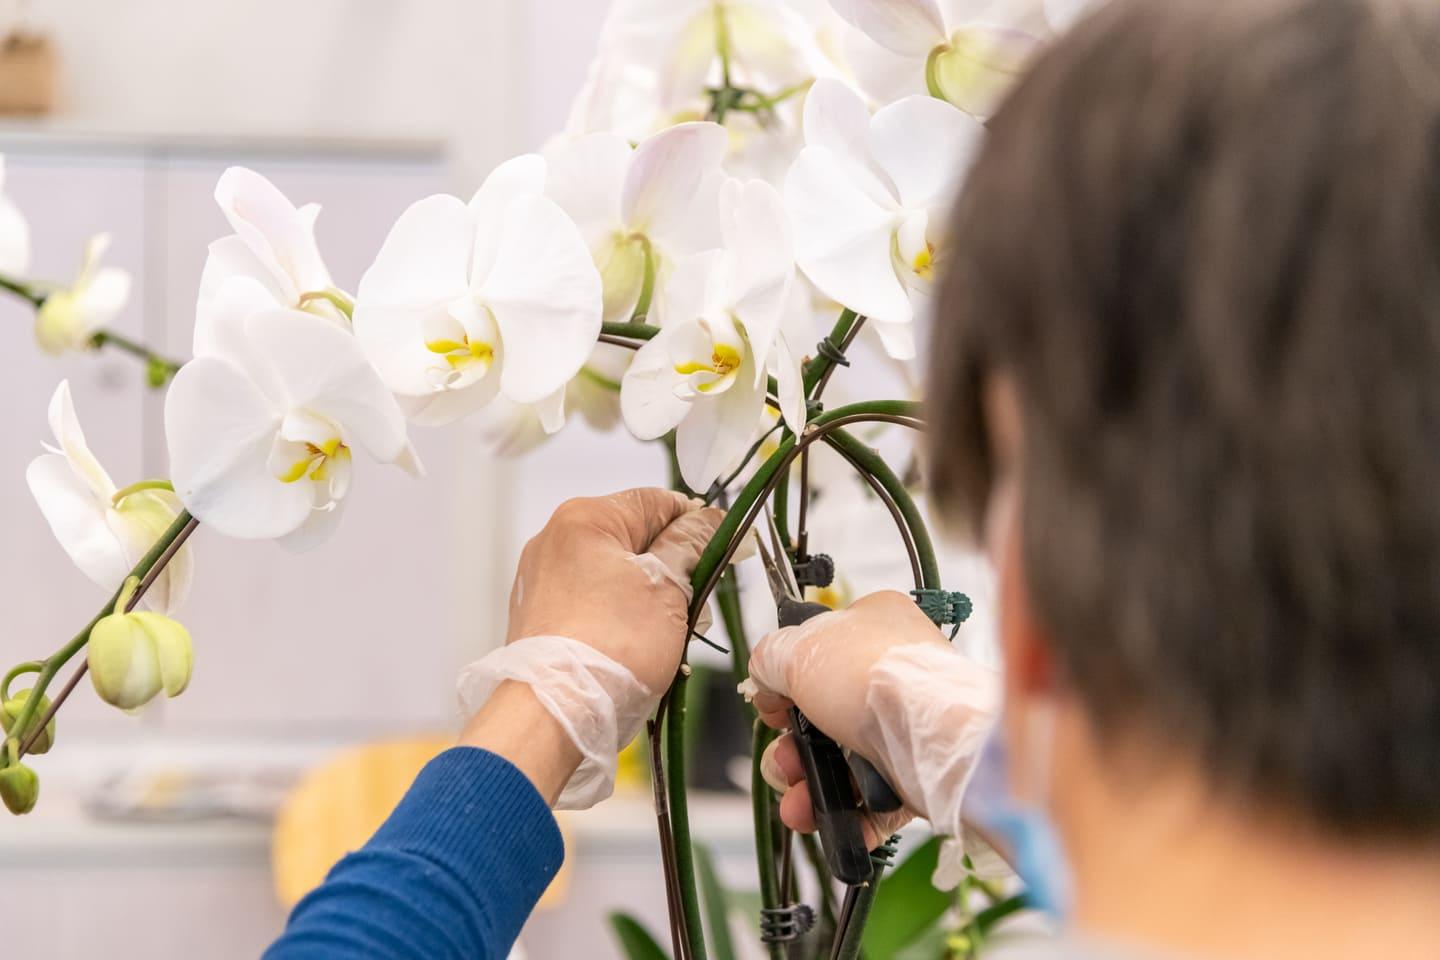 Décoratrice qui arrange ses orchidées au Marché de Rungis